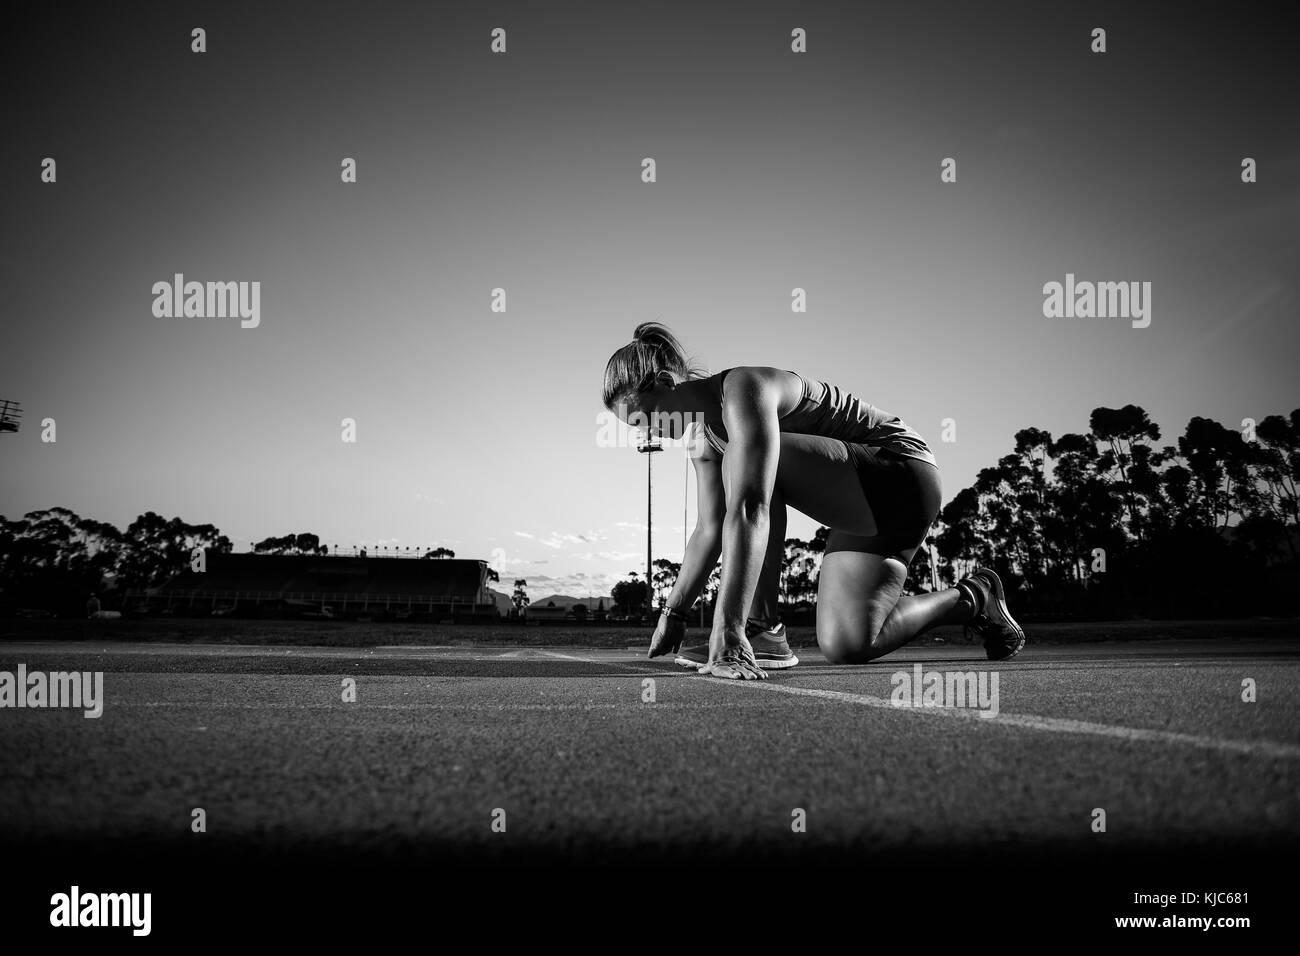 Nahaufnahme Weitwinkelaufnahme eines weiblichen sprinter Athlet fertig, ein Rennen auf einen tartan Rennstrecke mit dramatischen Beleuchtung am späten Nachmittag zu starten Stockfoto